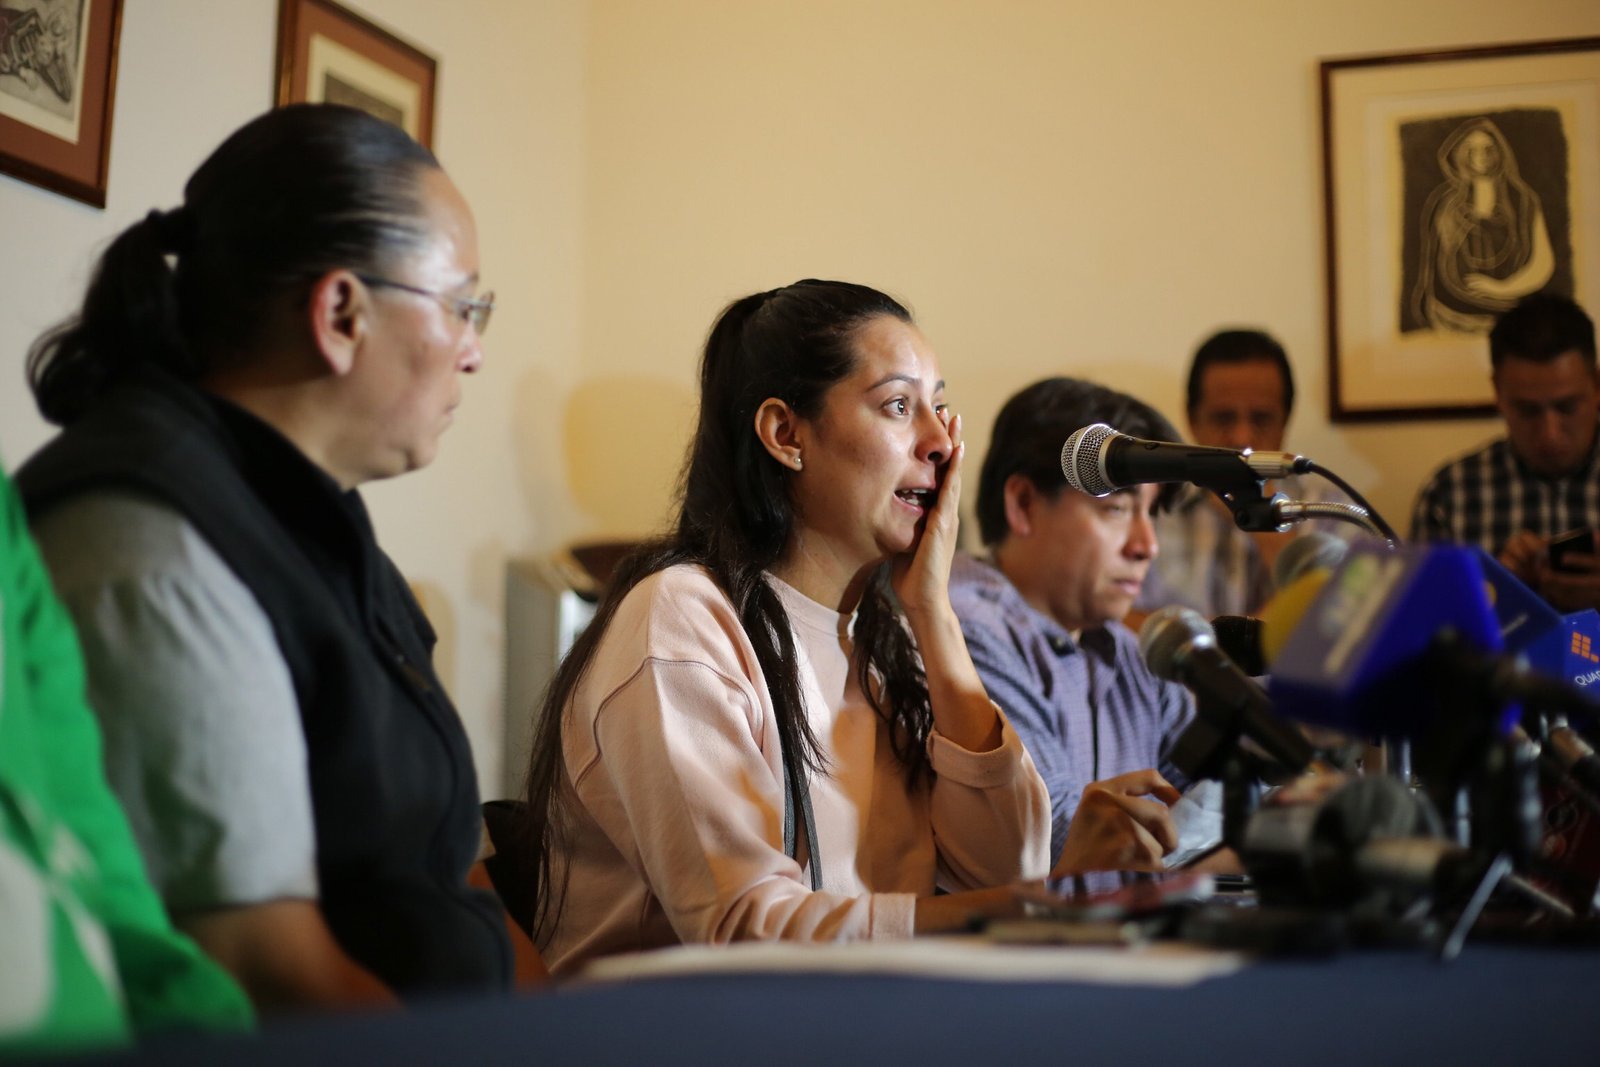 Confirma PGR que restos hallados en Michoacán son de Salvador Adame